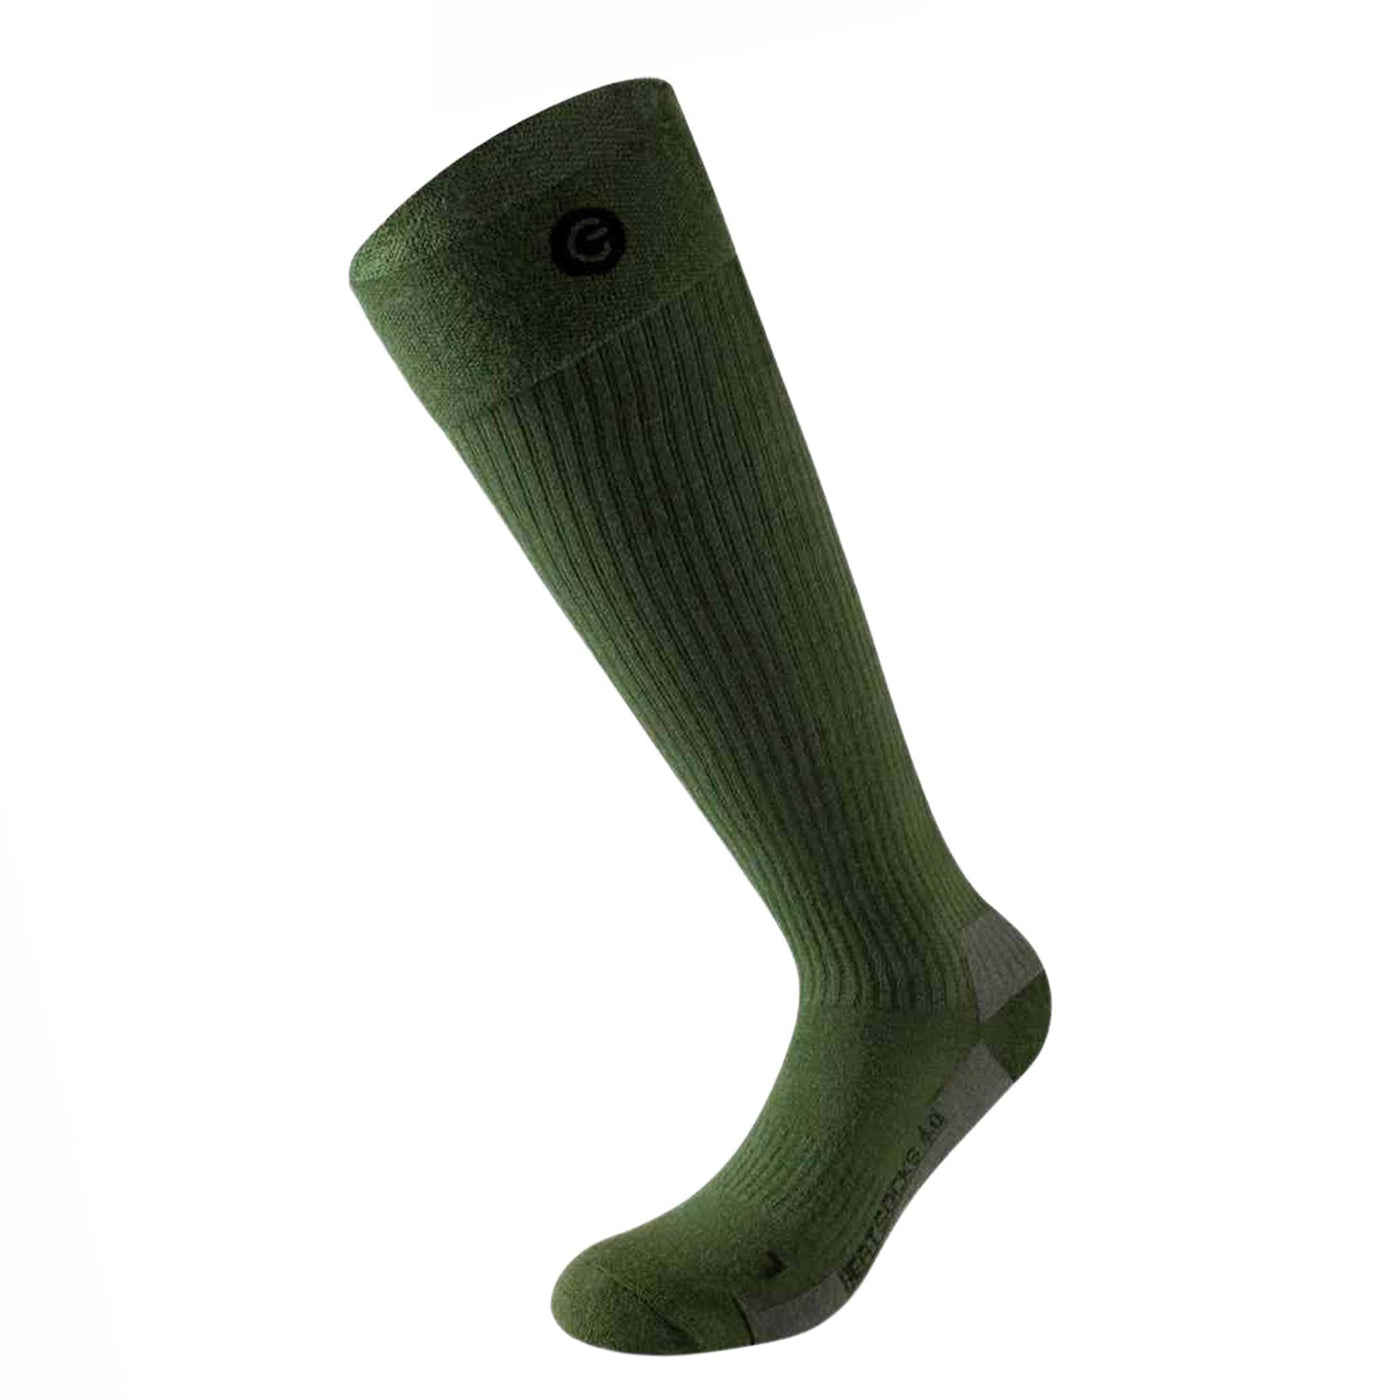 aus Retoure: Heat Sock 4.0 green